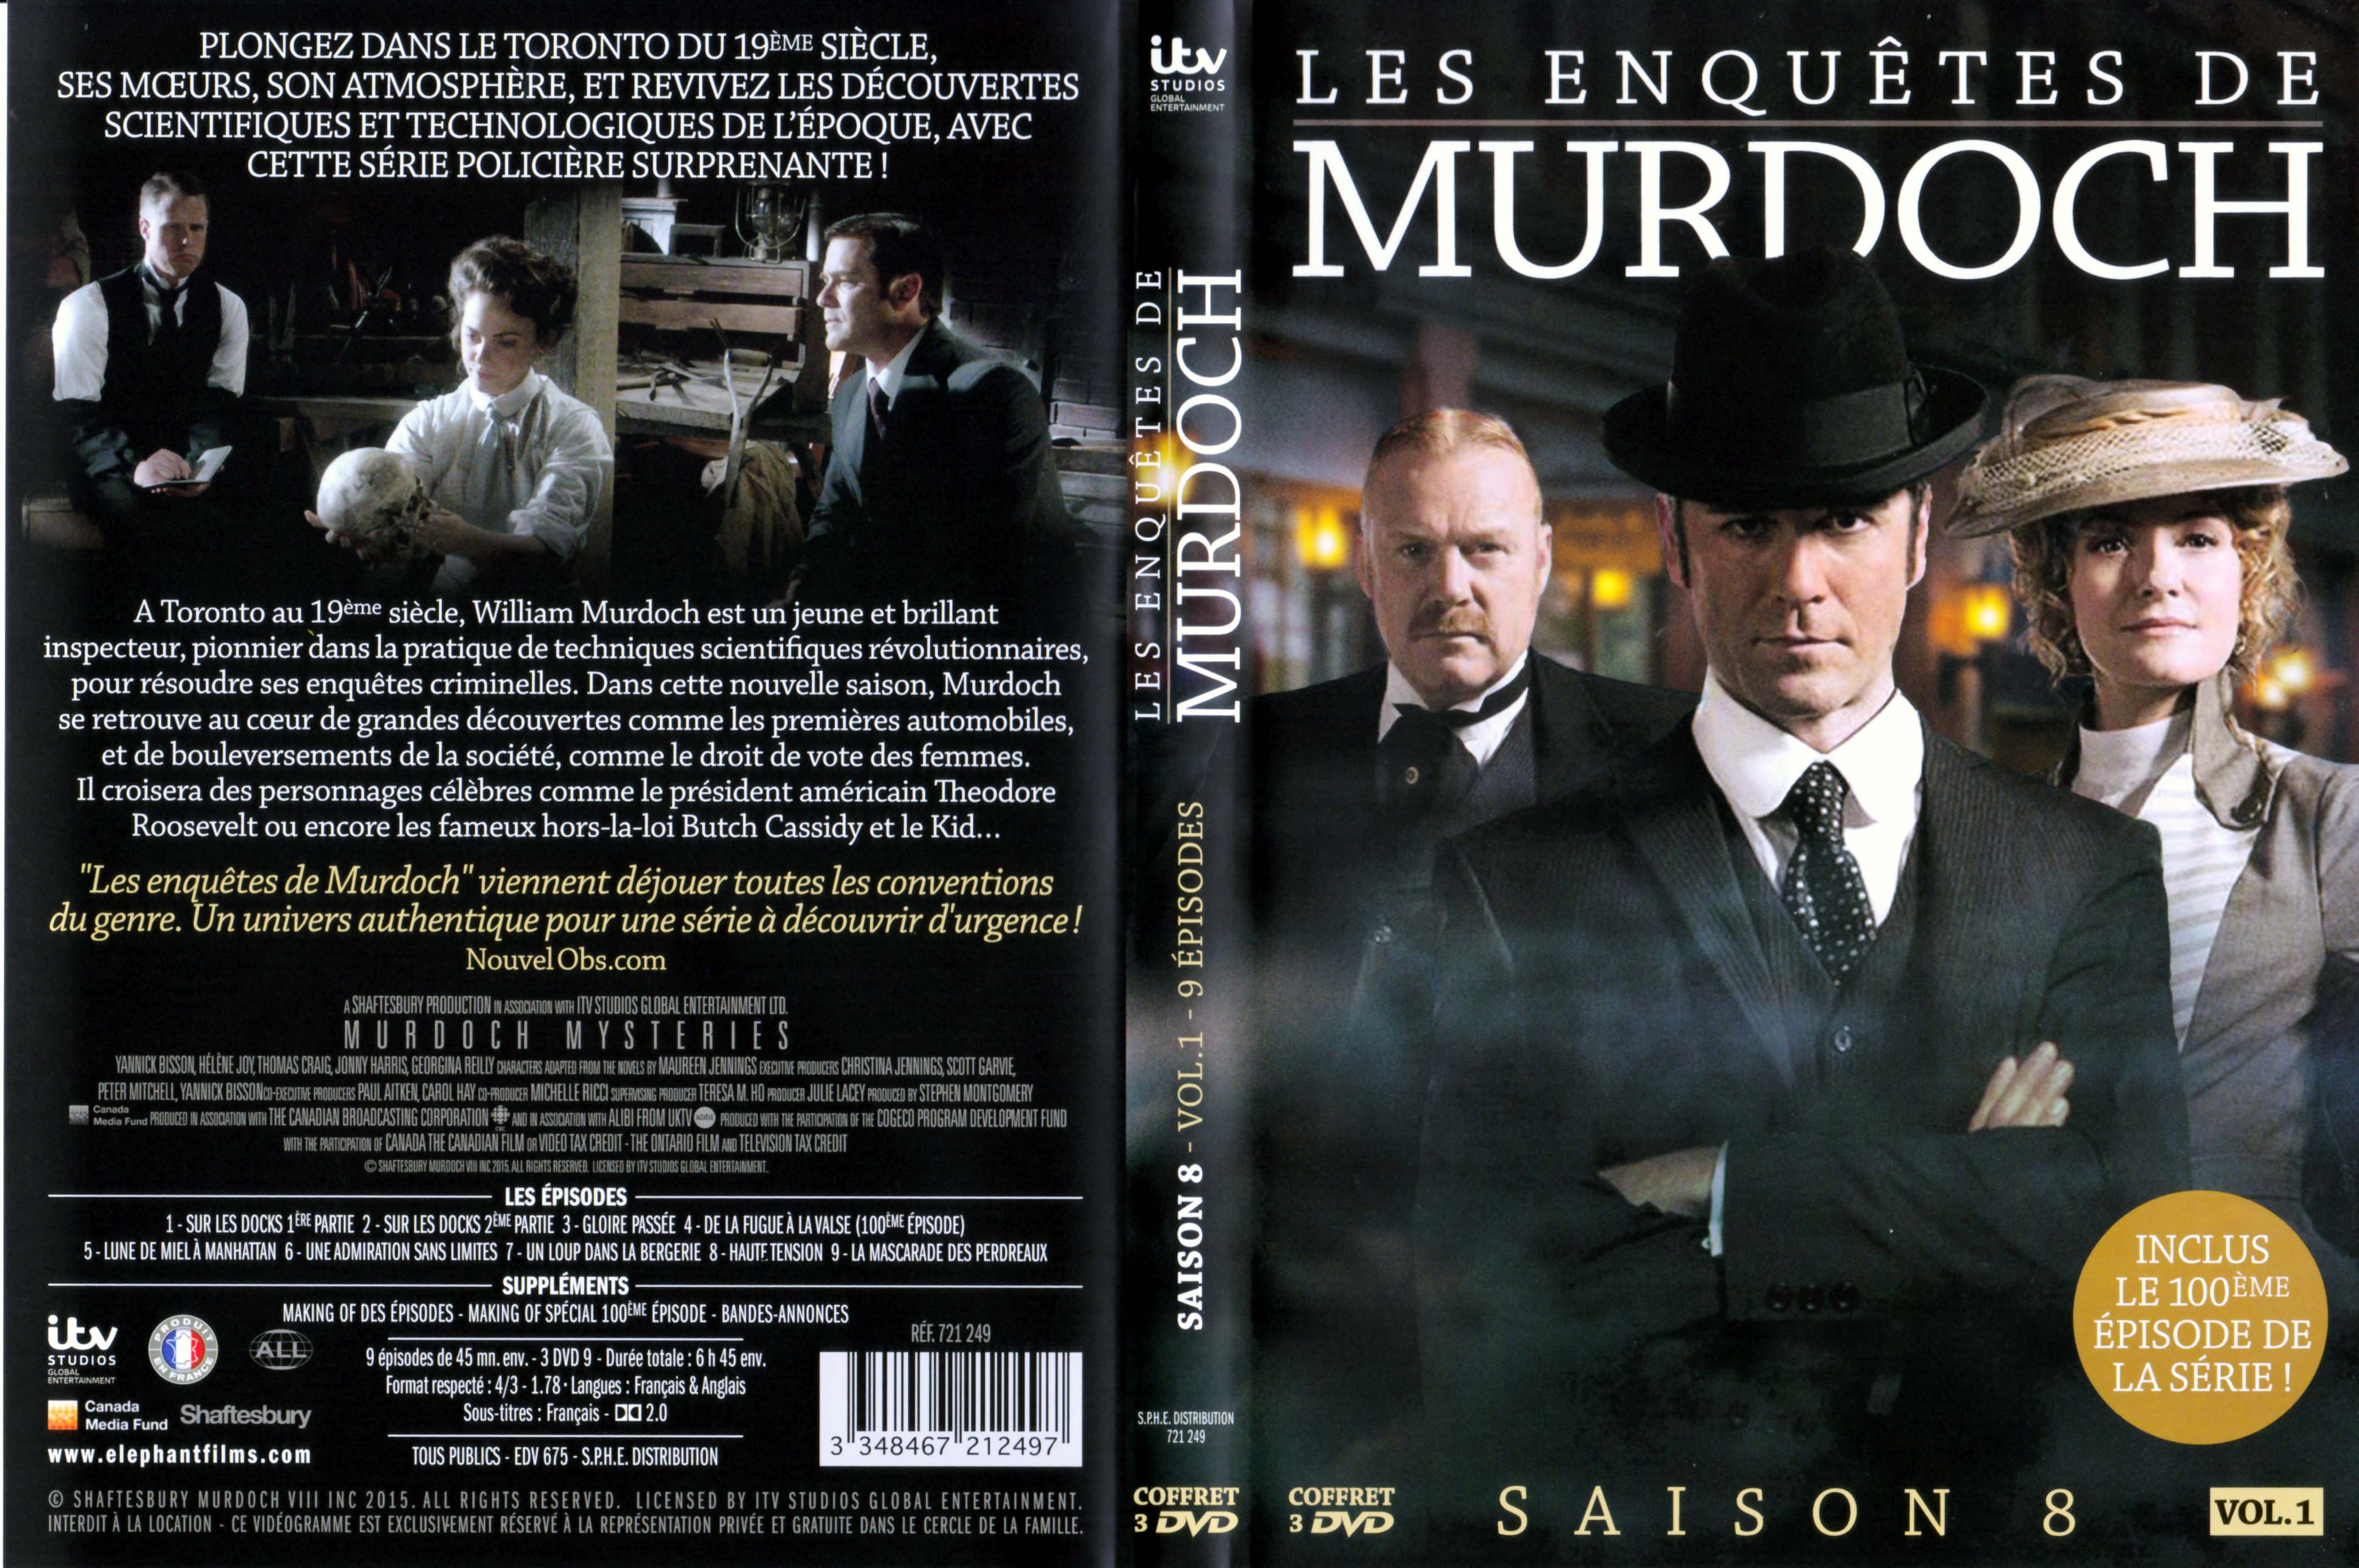 Jaquette DVD Les enqutes de Murdoch Saison 8 Vol 1